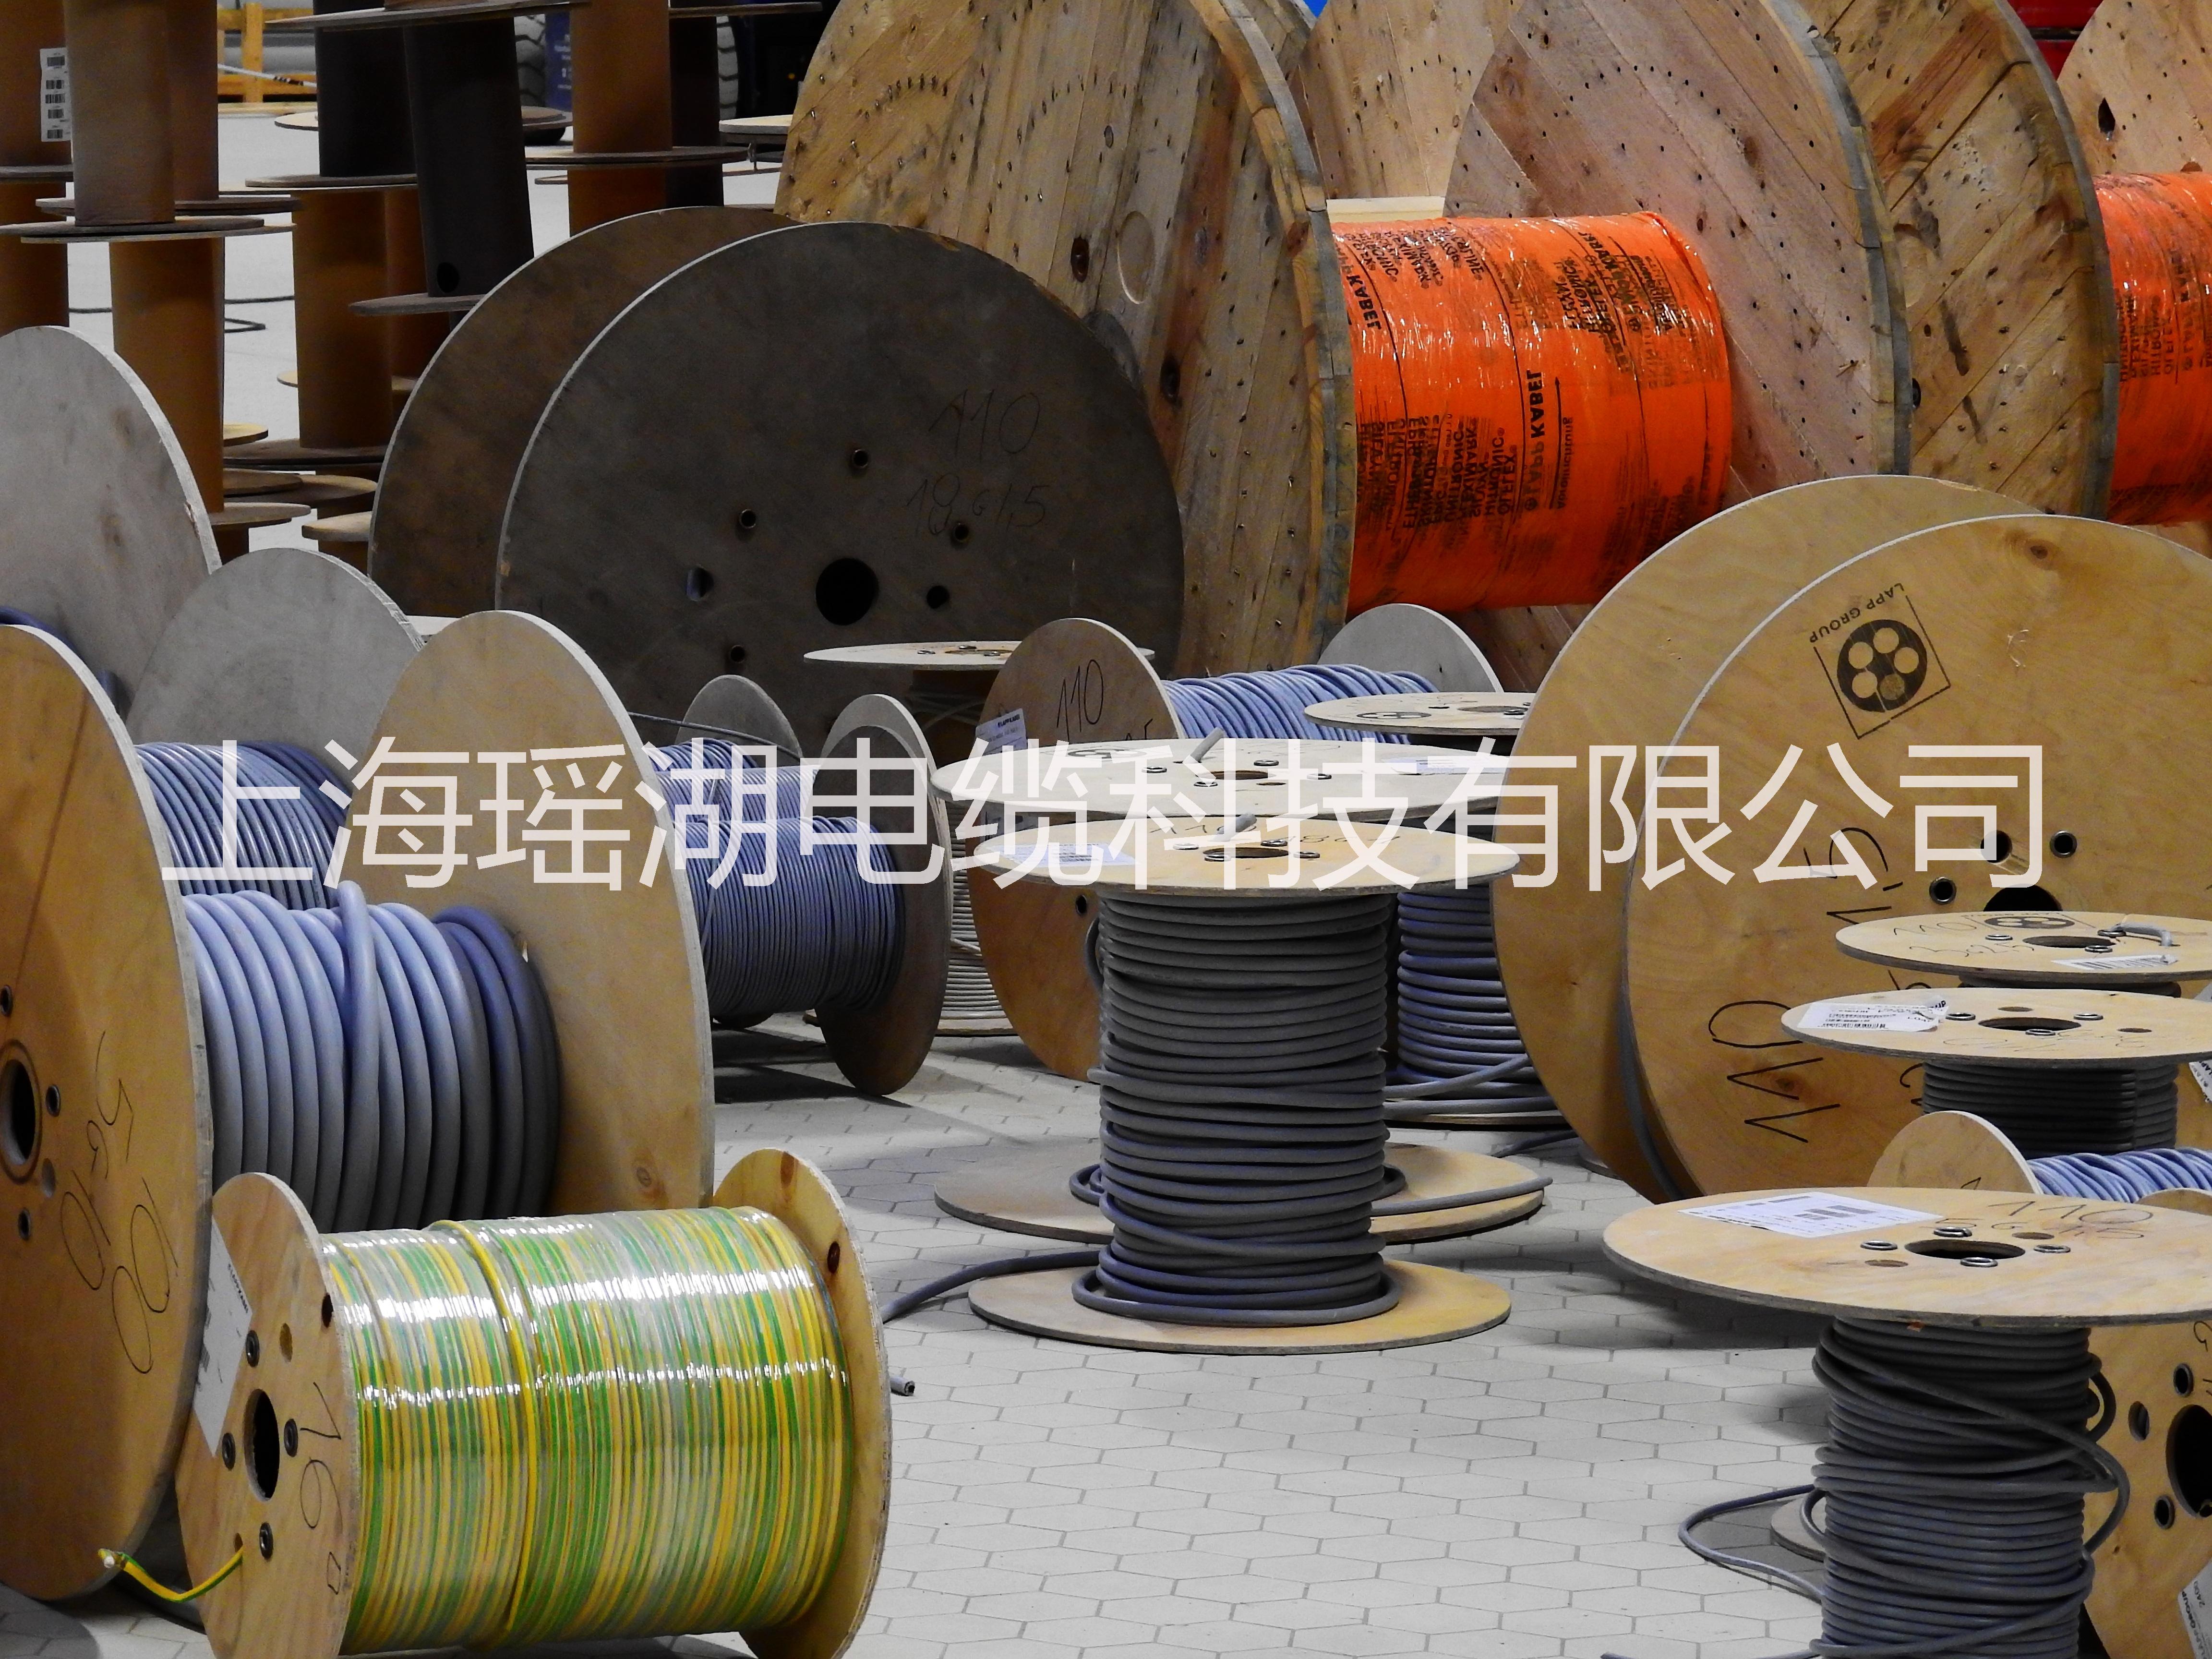 上海市卷筒电缆厂家卷筒电缆供应商 卷筒电缆价格 卷筒电缆批发商卷筒电缆哪里好  卷筒电缆